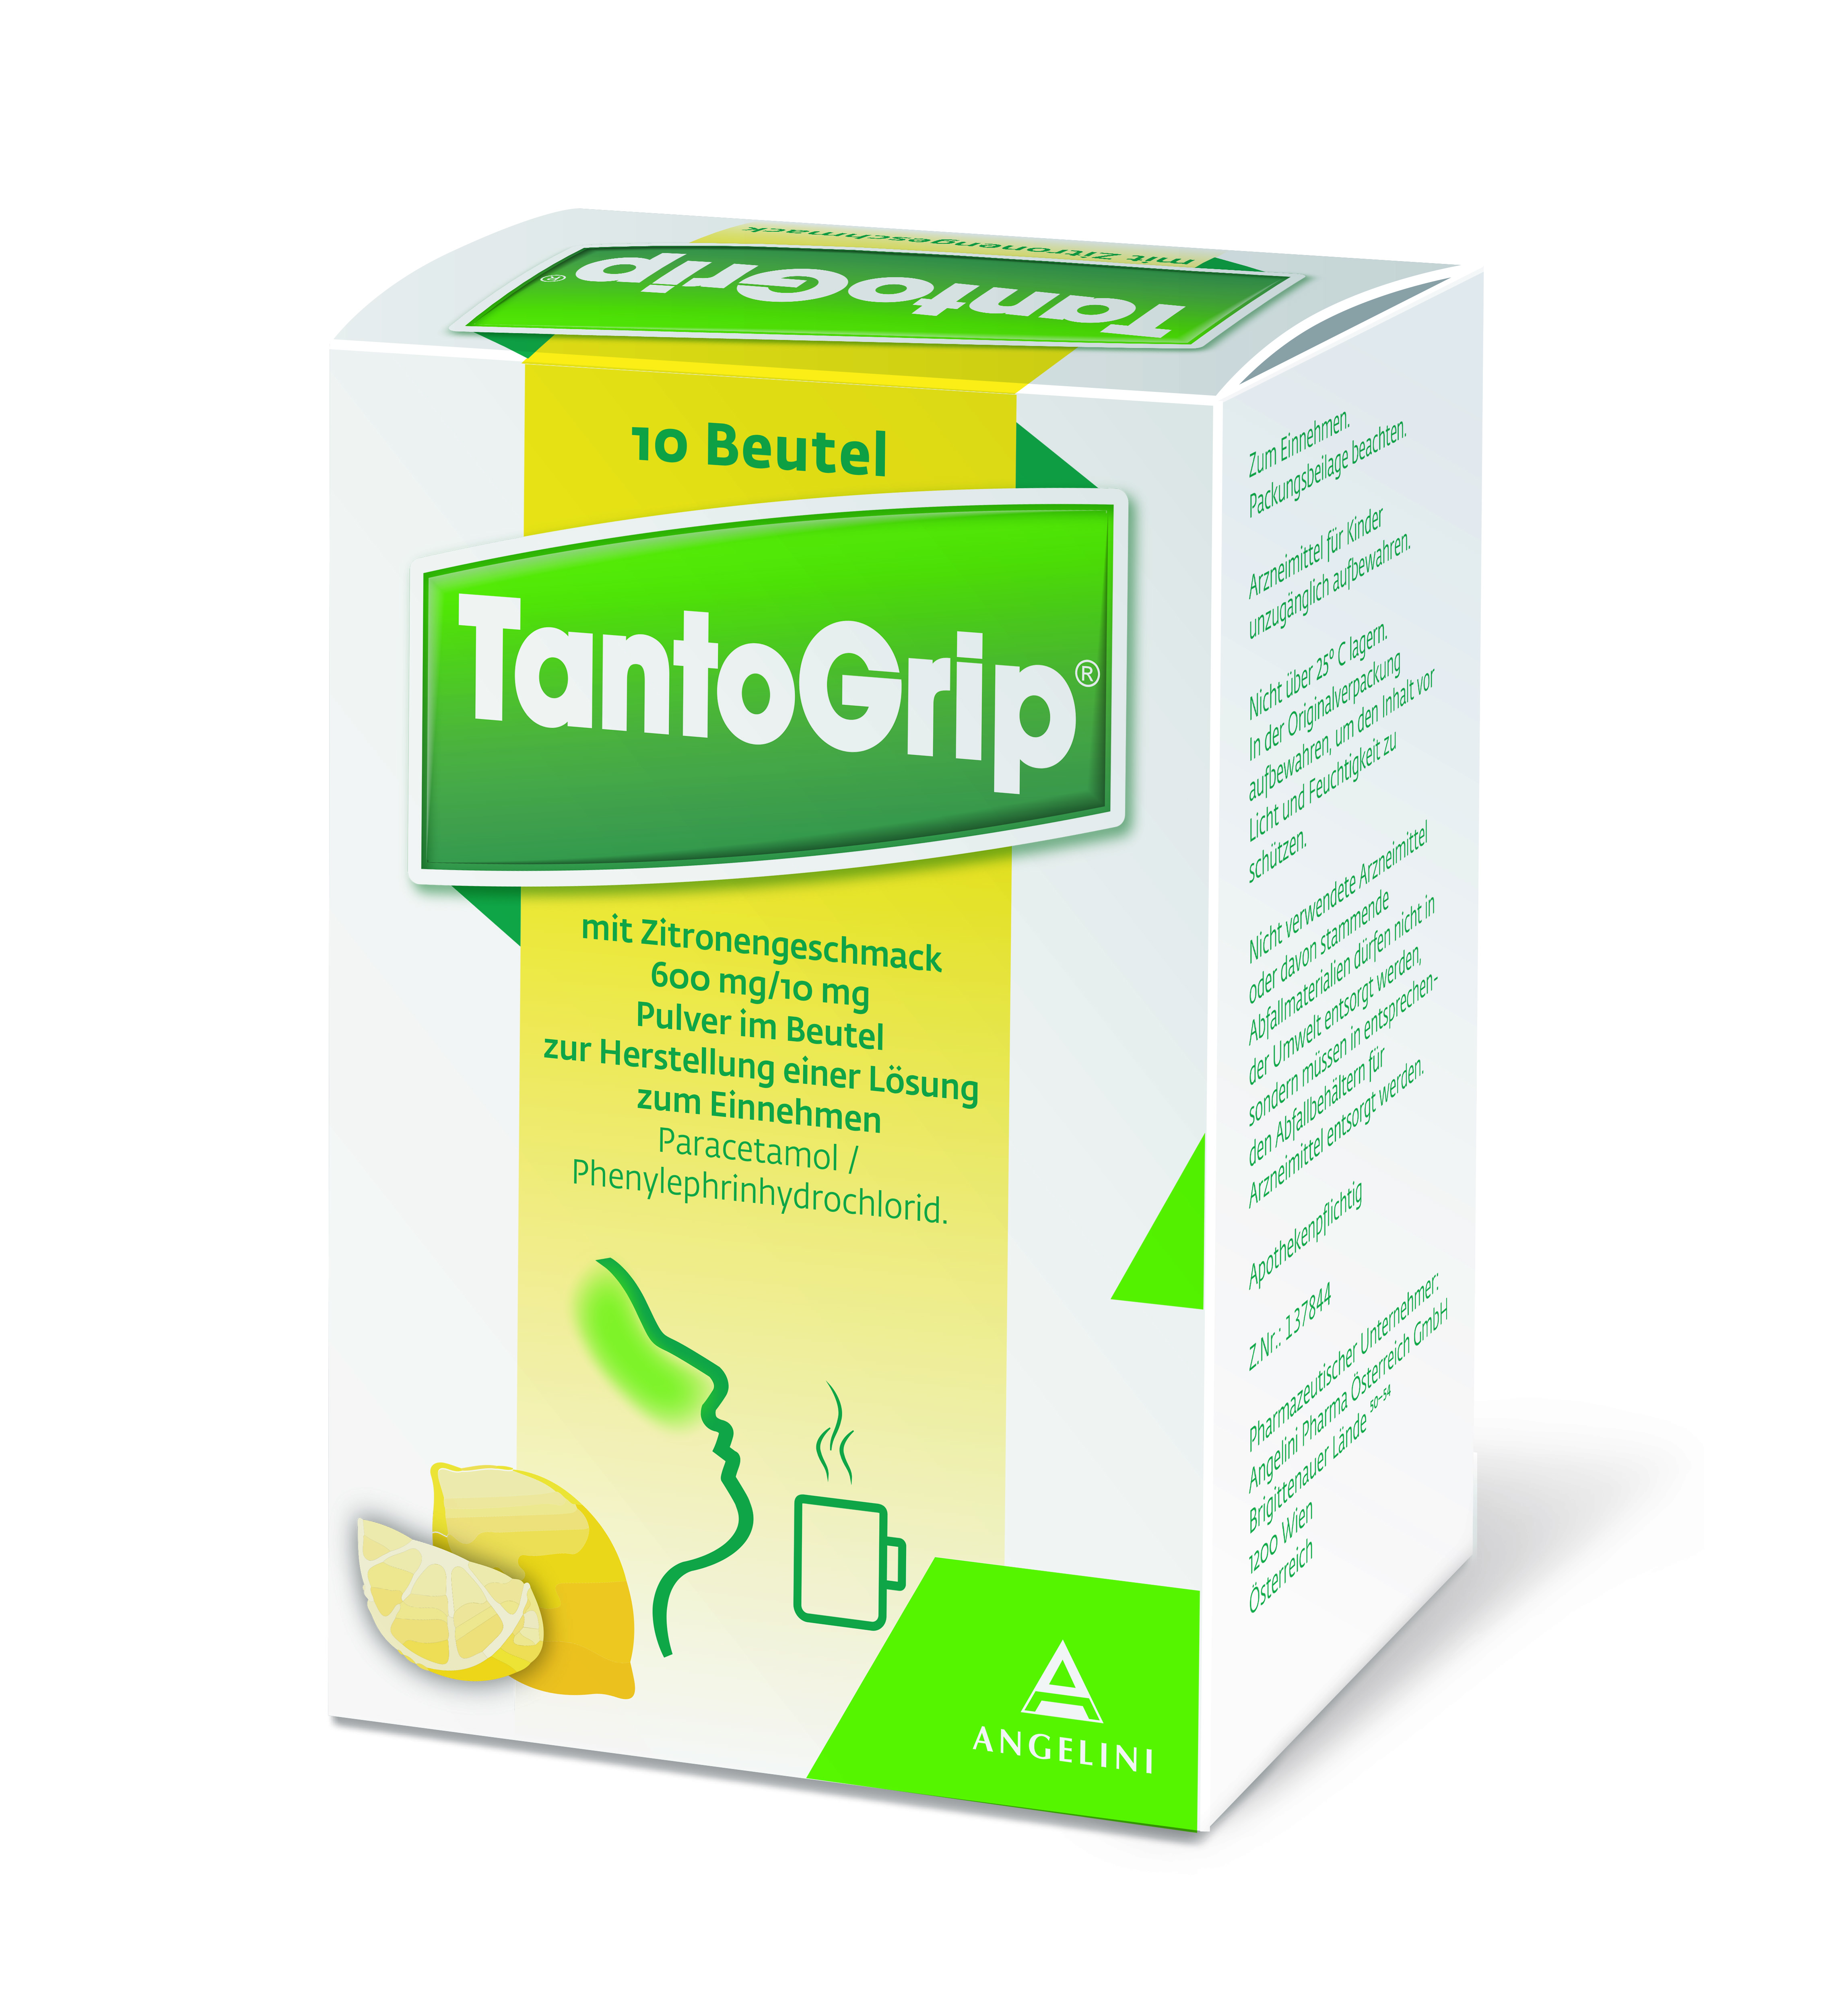 TantoGrip mit Zitronengeschmack 600 mg/10 mg - Pulver im Beutel zur Herstellung einer Lösung zum Einnehmen